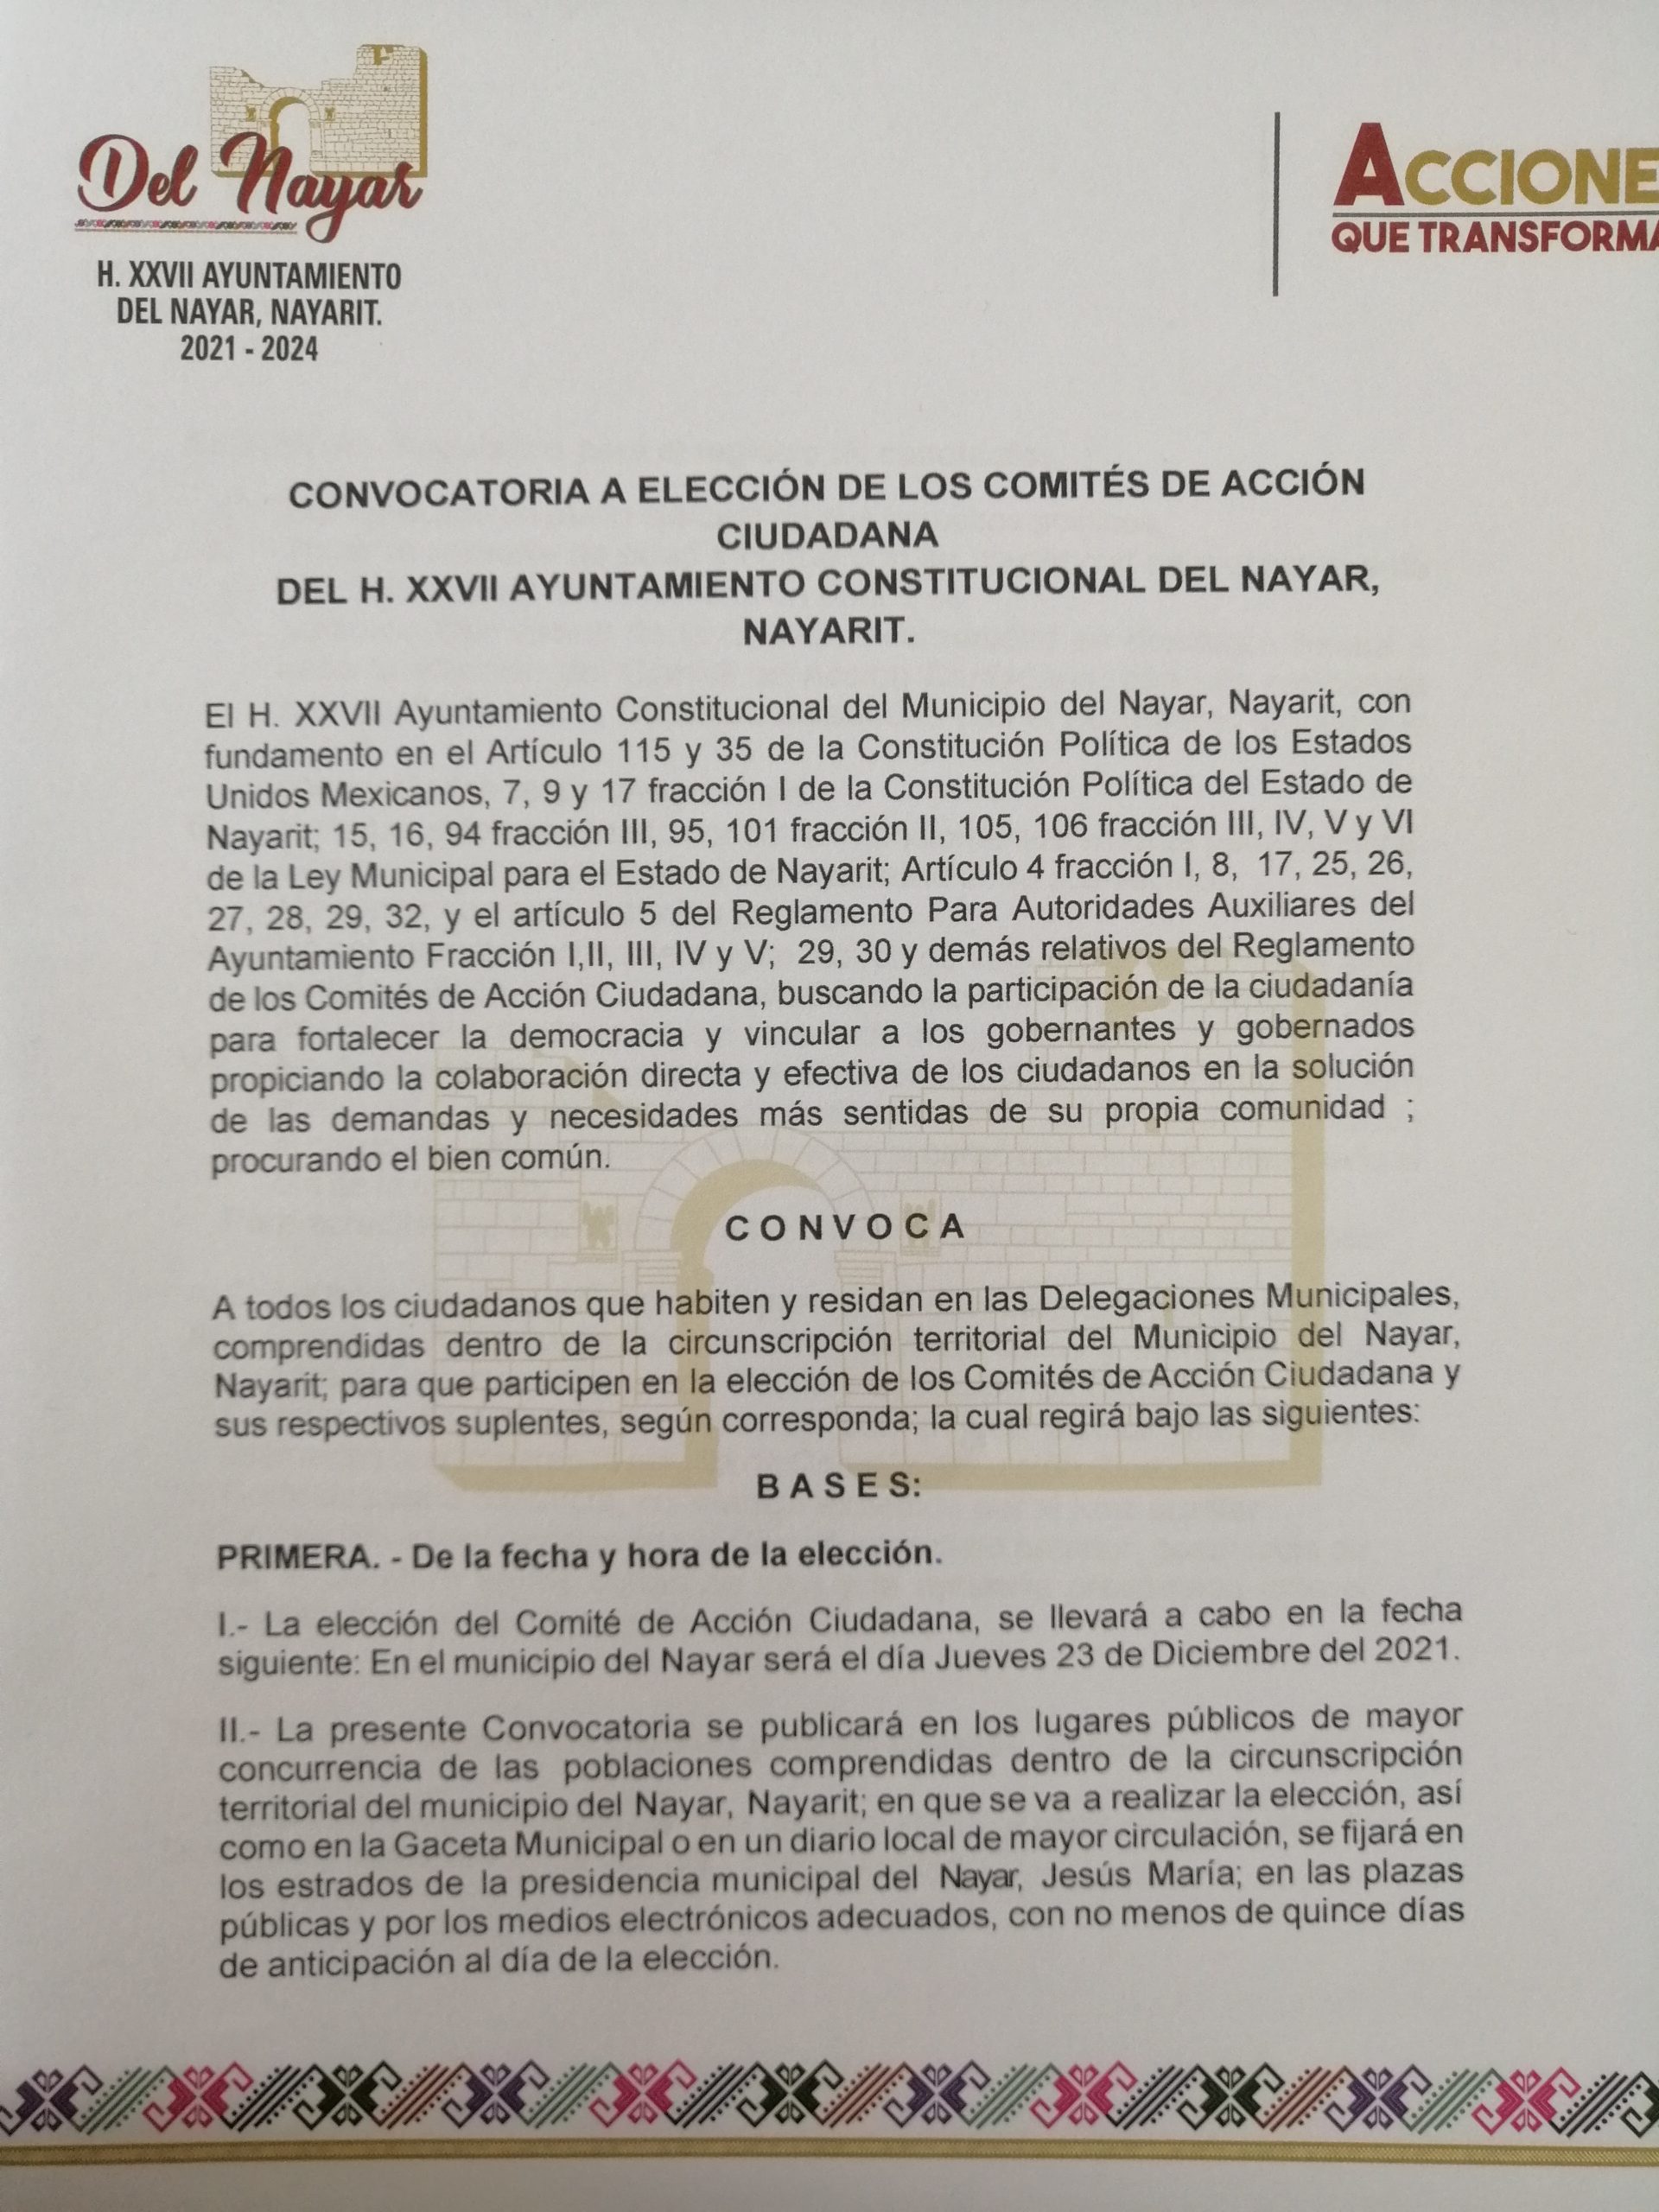 CONVOCATORIA ELECCION DE COMITES DE ACCION CIUDADANA DEL NAYAR